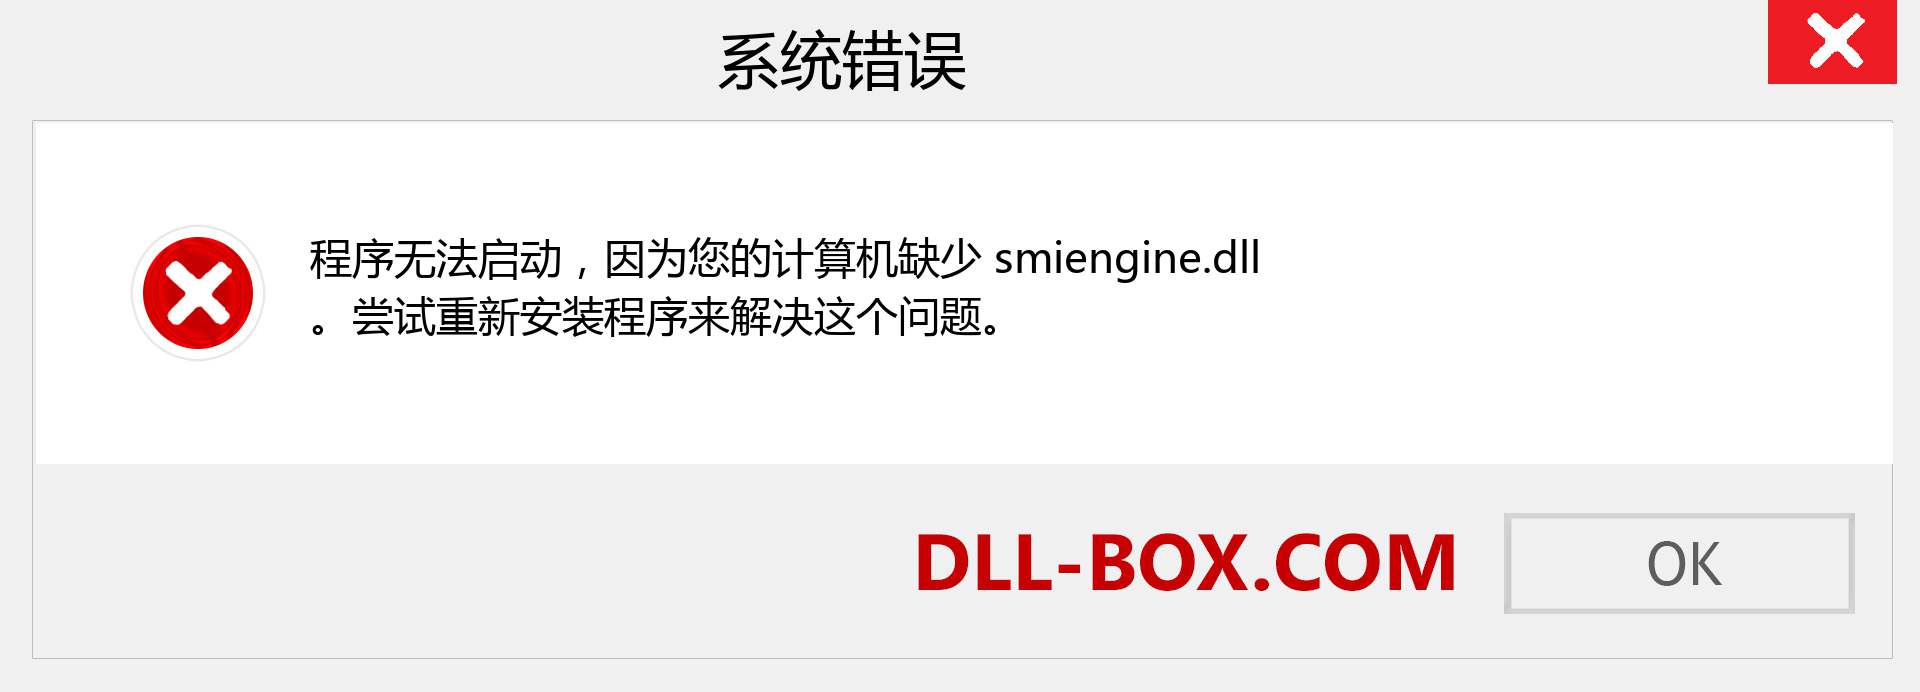 smiengine.dll 文件丢失？。 适用于 Windows 7、8、10 的下载 - 修复 Windows、照片、图像上的 smiengine dll 丢失错误